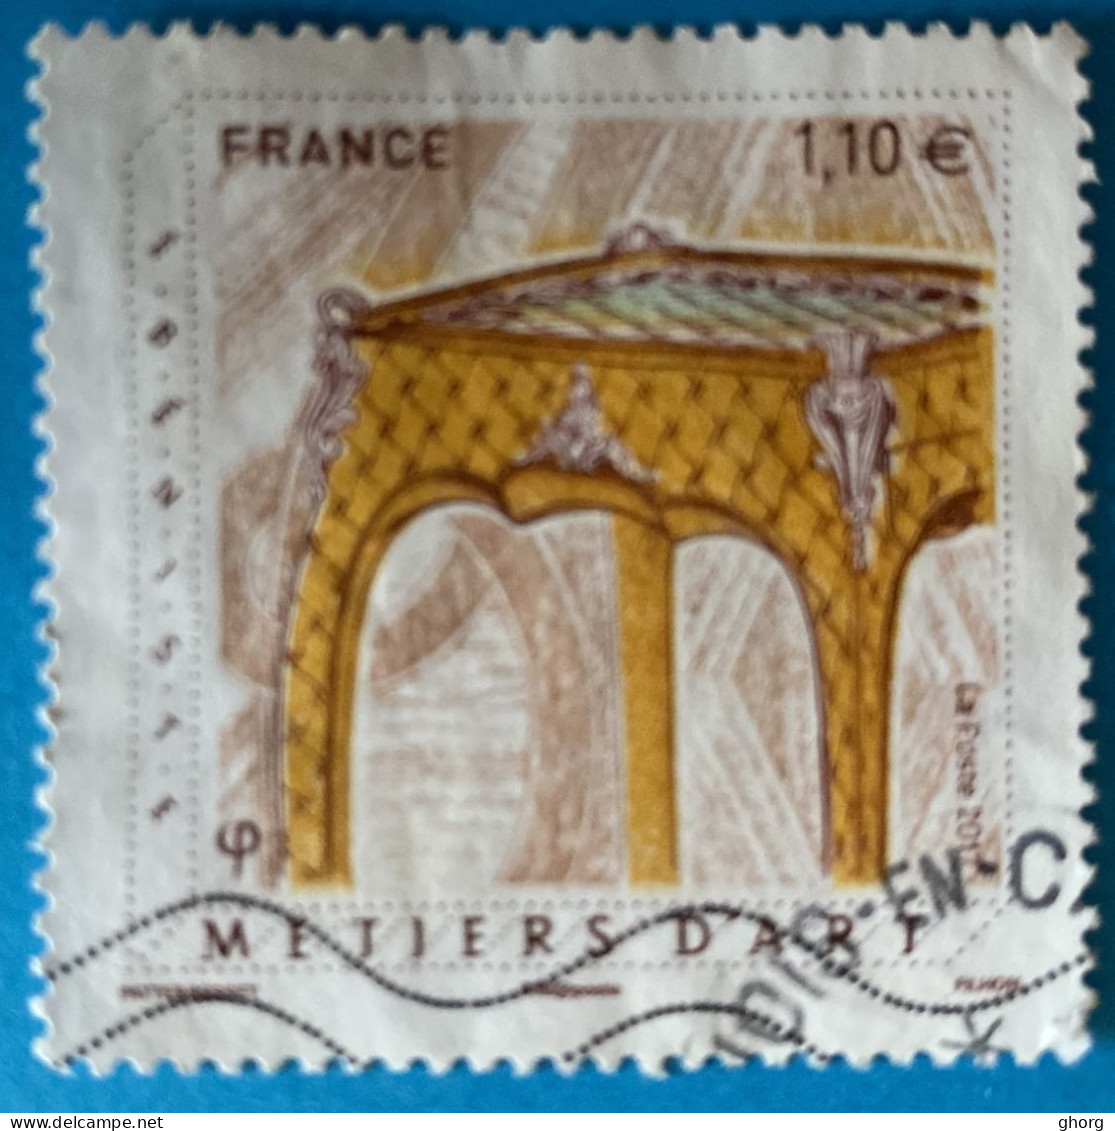 France 2017 : Les Métiers D'art, ébéniste N° 5197 Oblitéré - Used Stamps